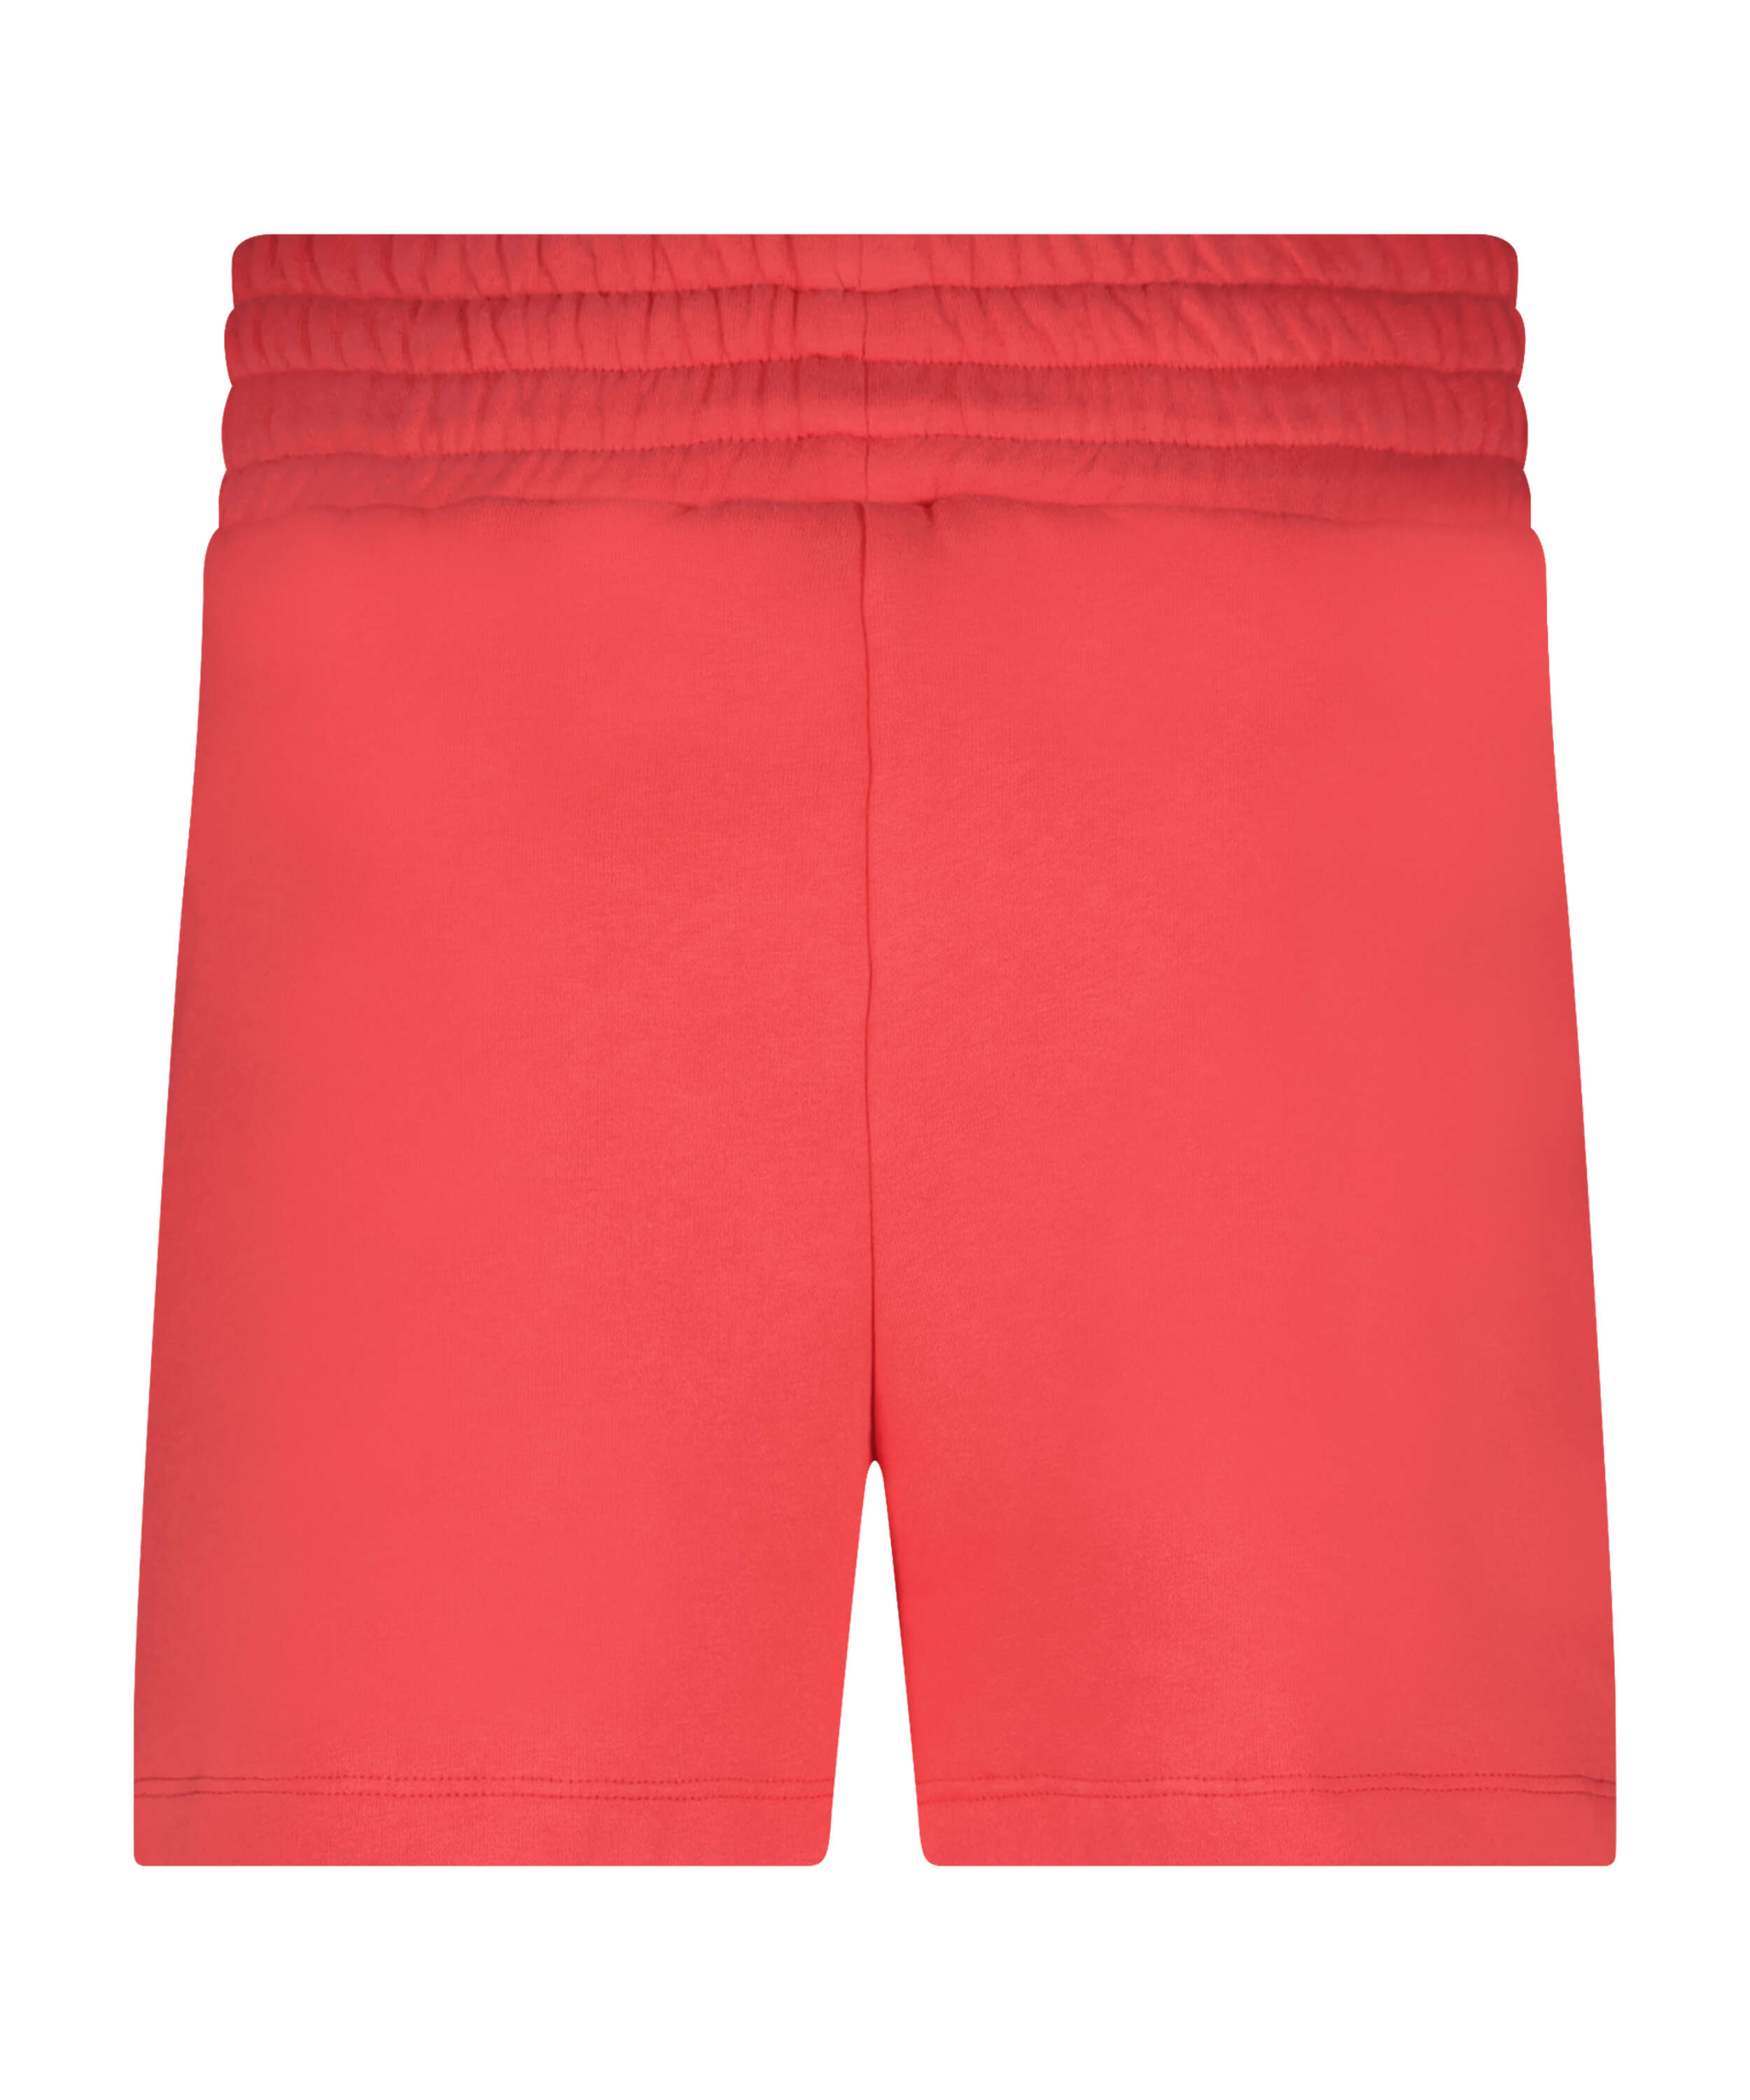 Shorts Sweat Lounge, Pink, main